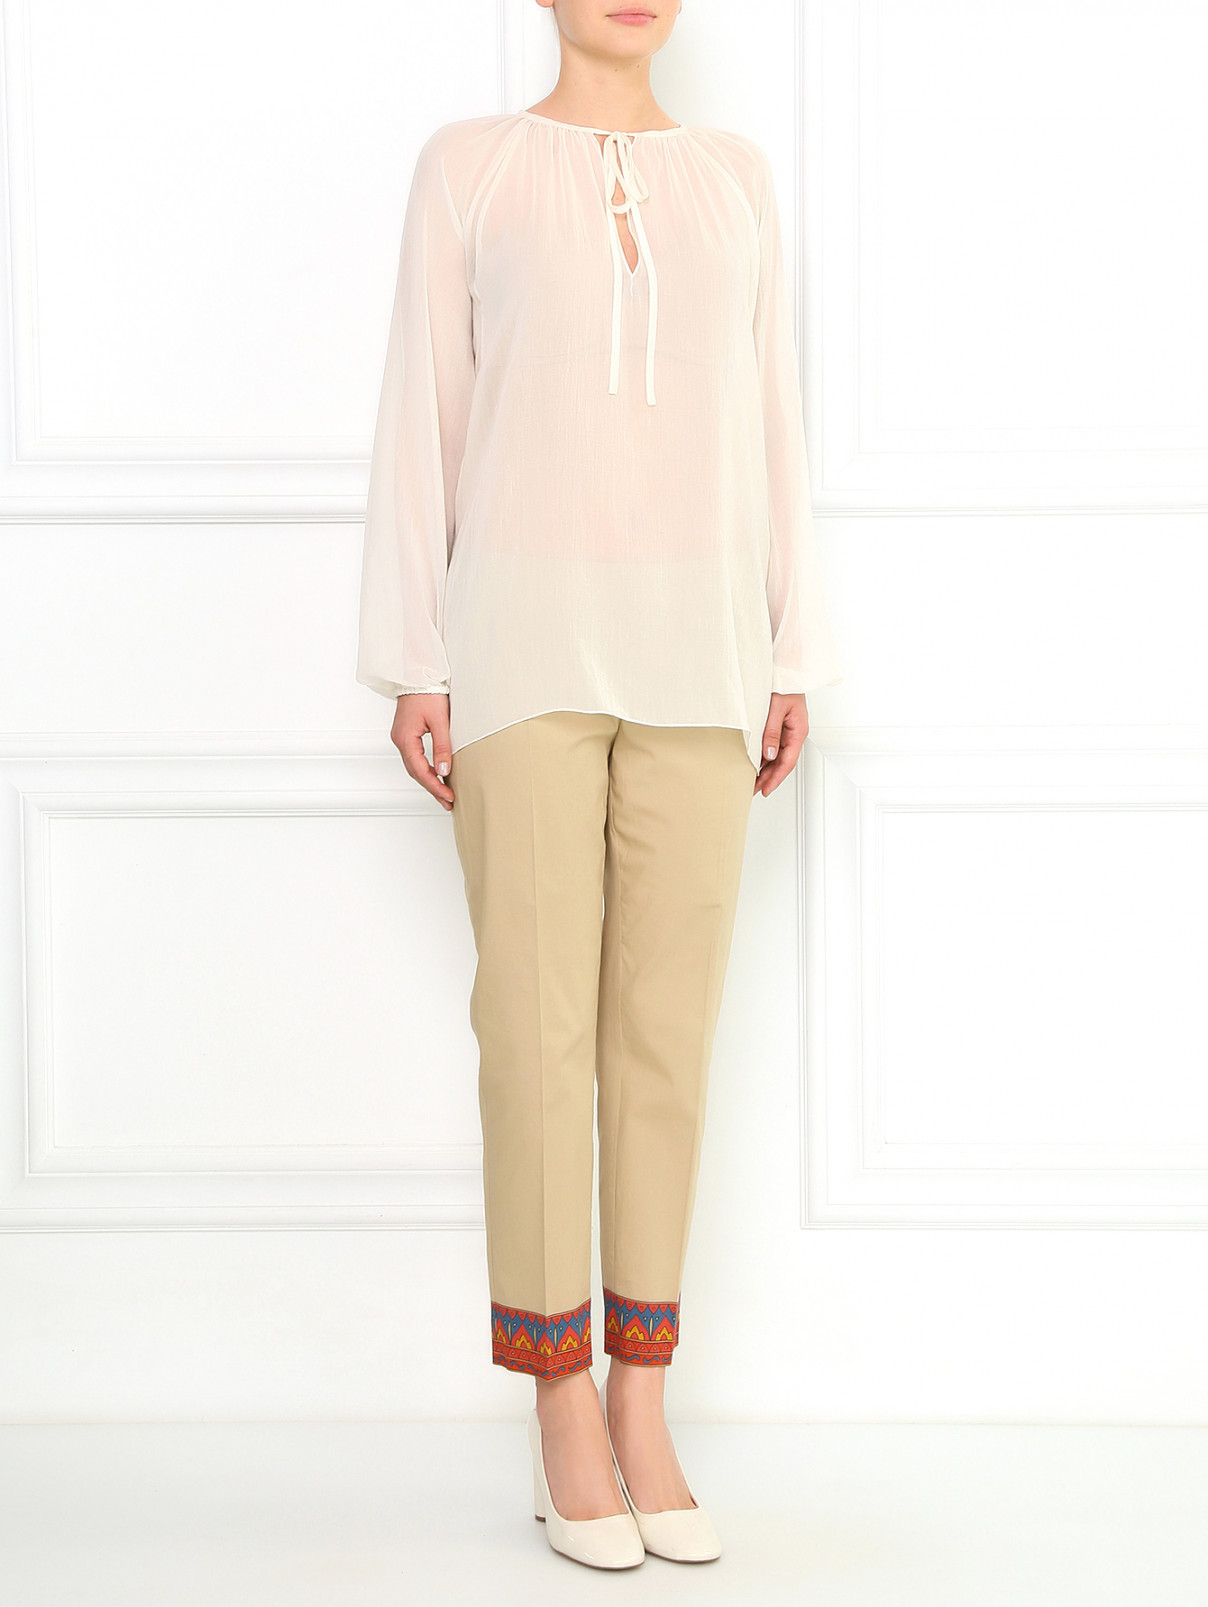 Шелковая блуза свободного кроя Jean Paul Gaultier  –  Модель Общий вид  – Цвет:  Белый